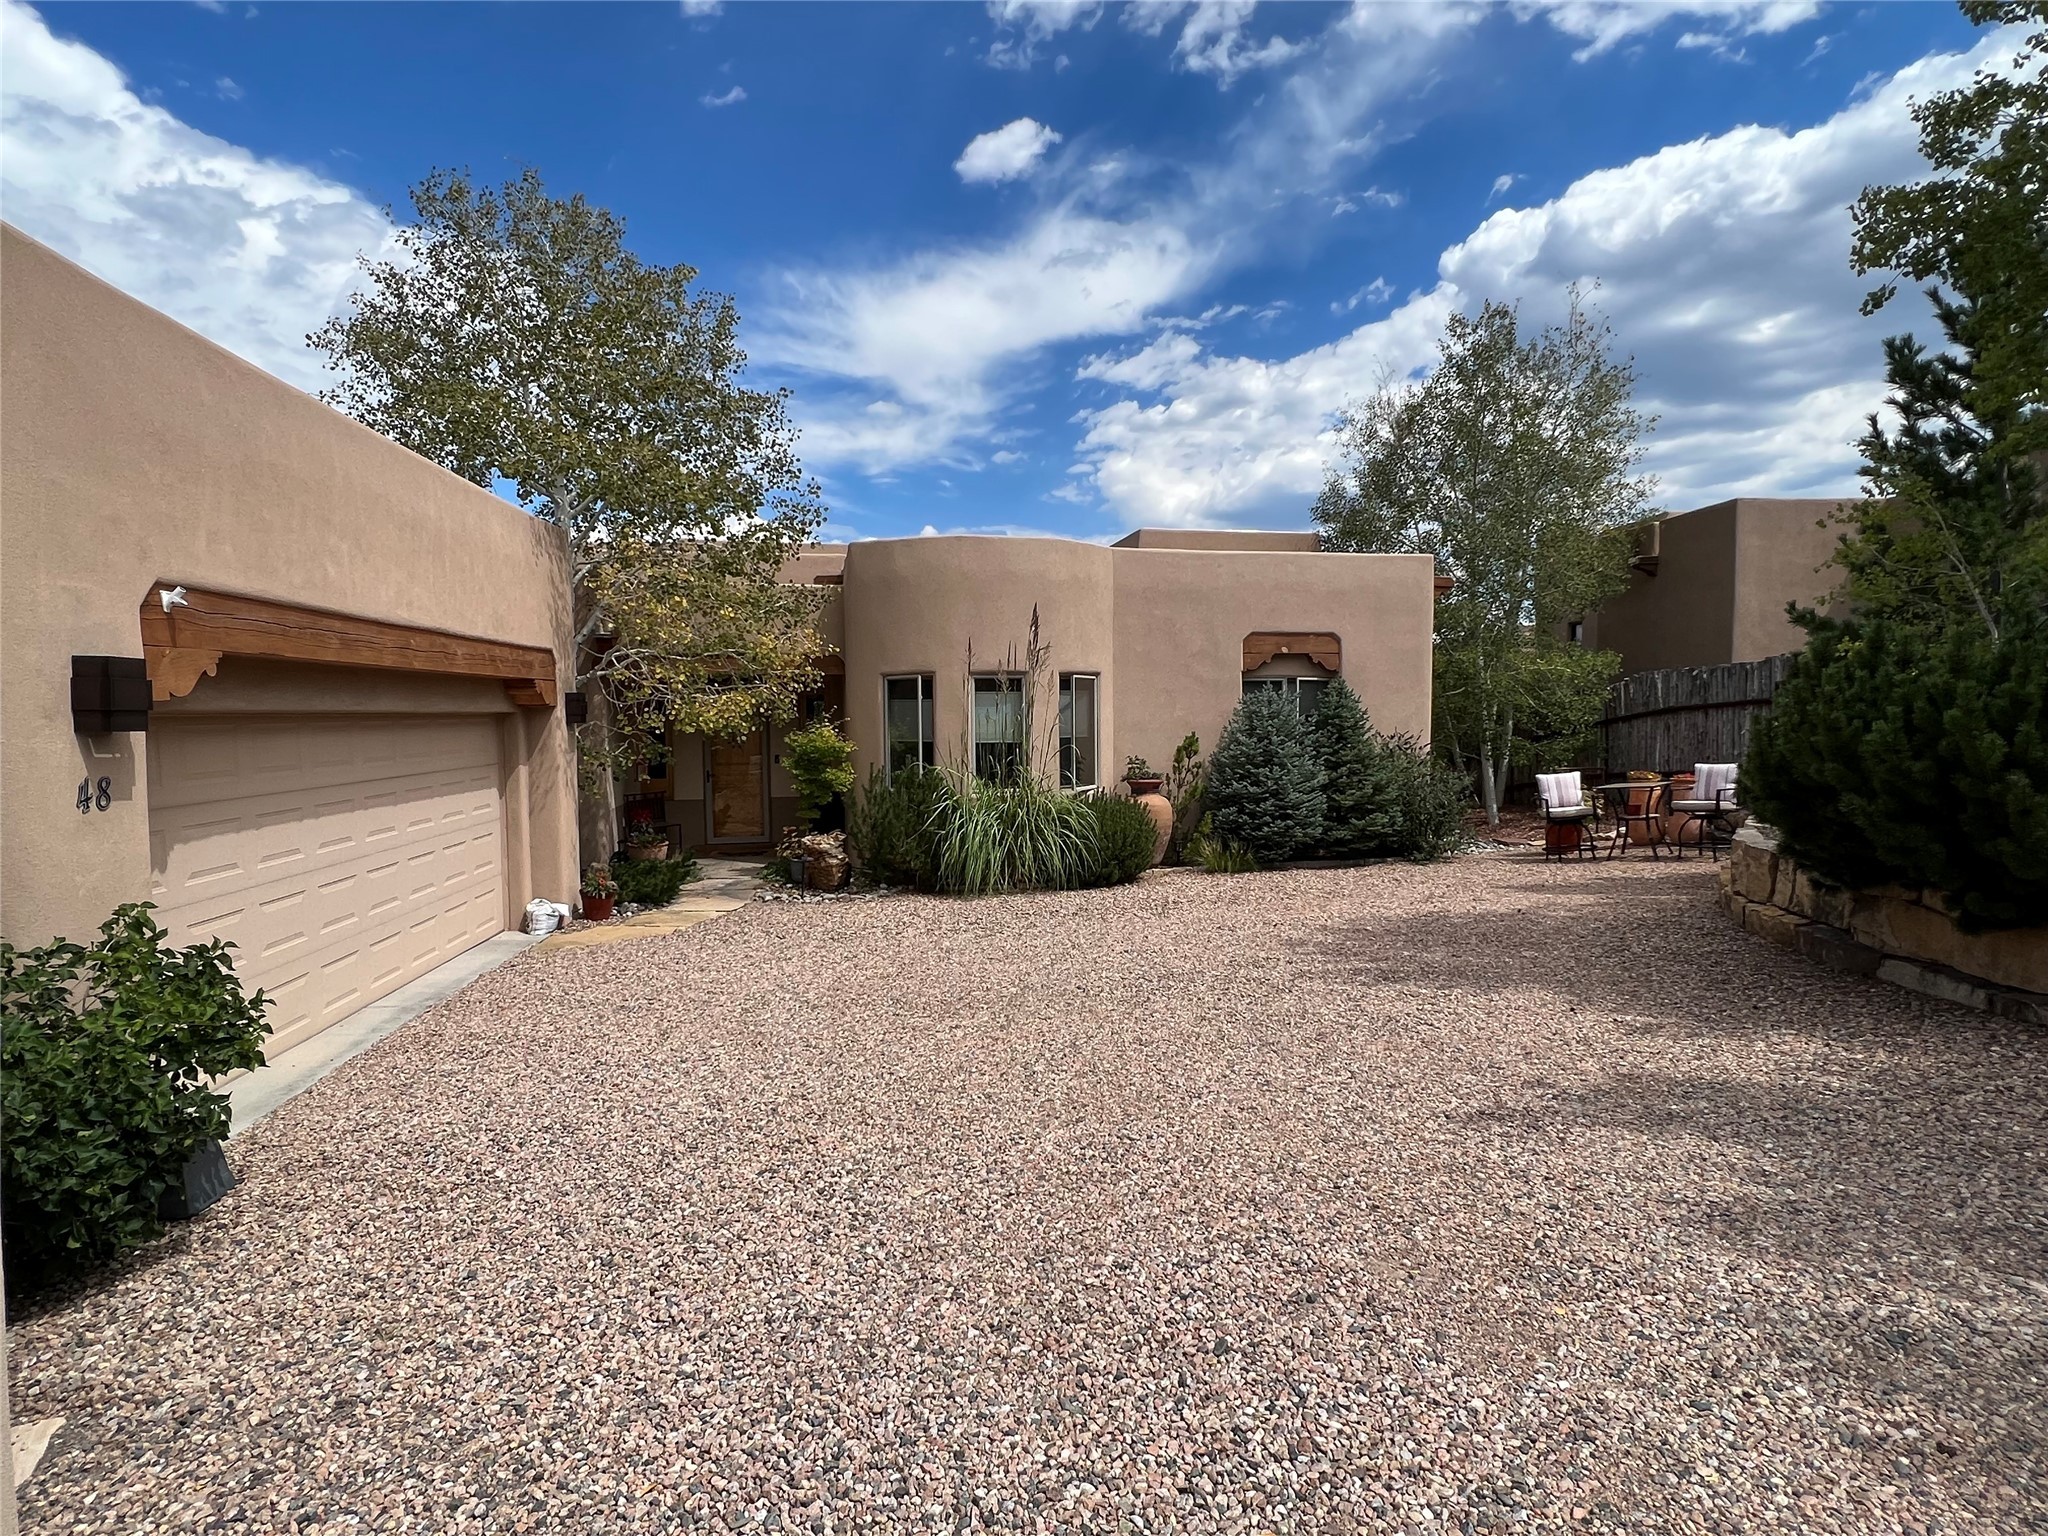 48 Centaurus Ranch, Santa Fe, New Mexico 87507, 3 Bedrooms Bedrooms, ,3 BathroomsBathrooms,Residential,For Sale,48 Centaurus Ranch,202232606